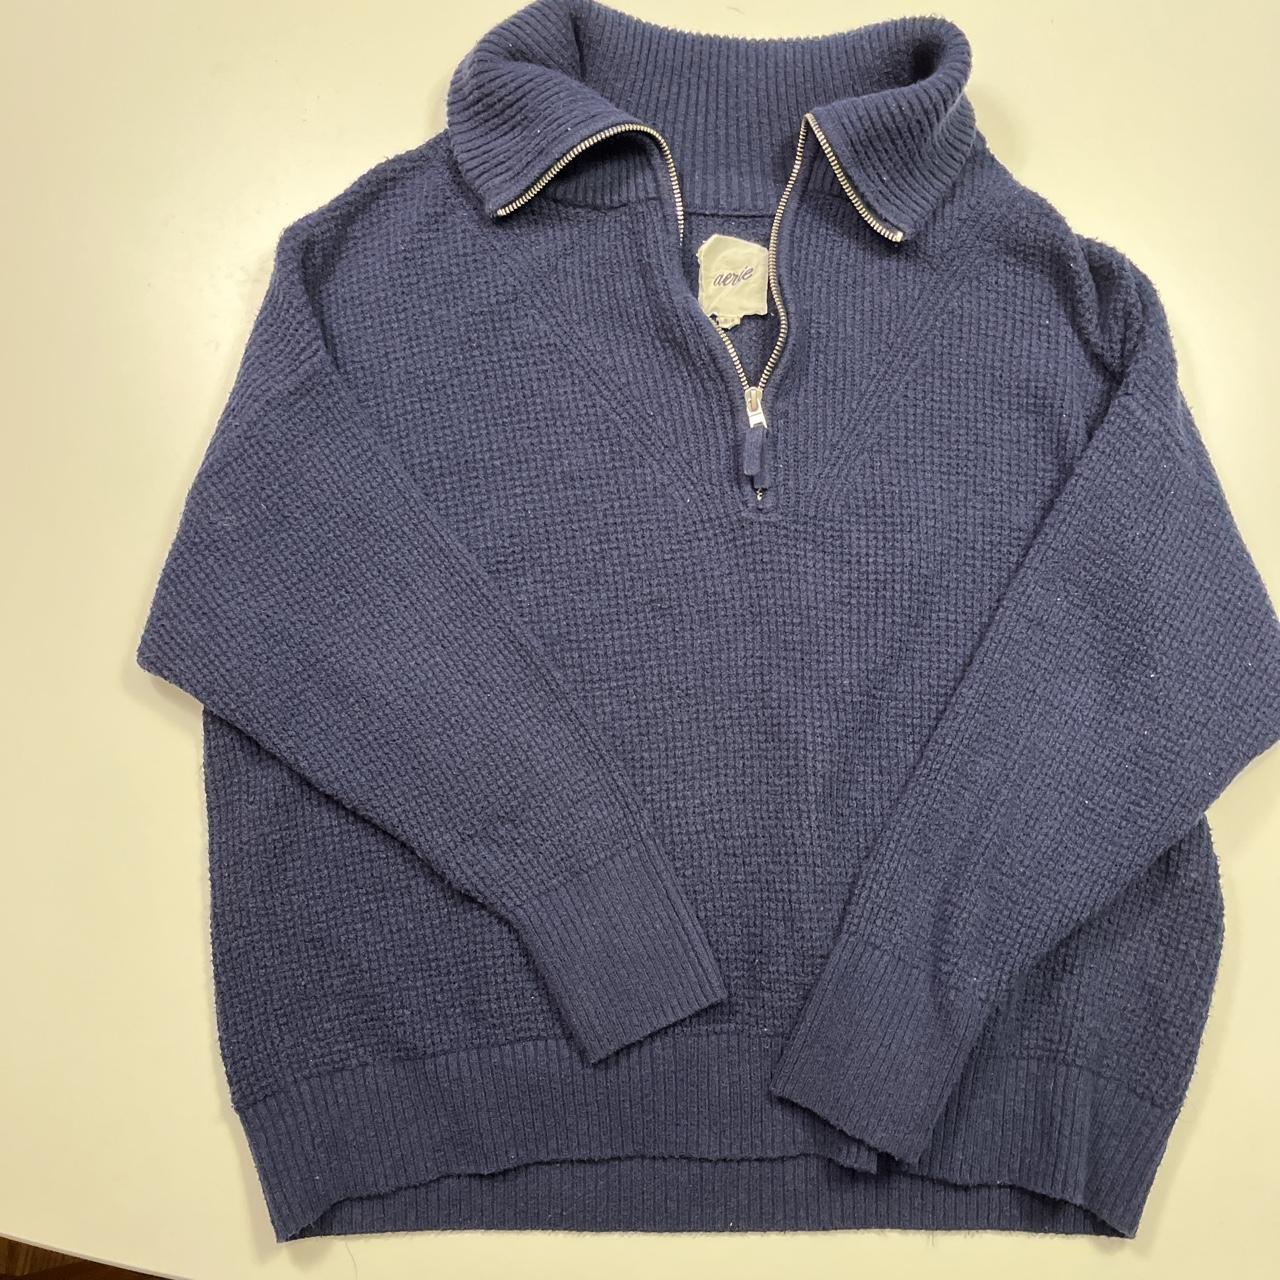 Aerie navy blue waffle knit quarter zip sweater - Depop